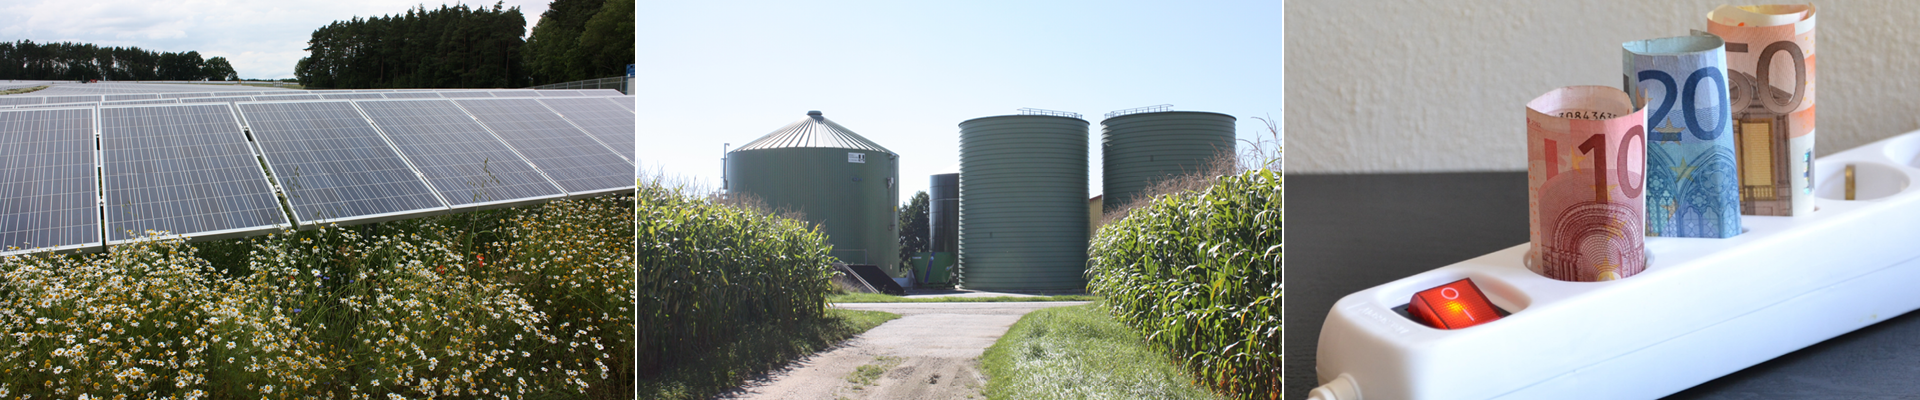 12. Biogastagung: Biogas – da geht noch was!